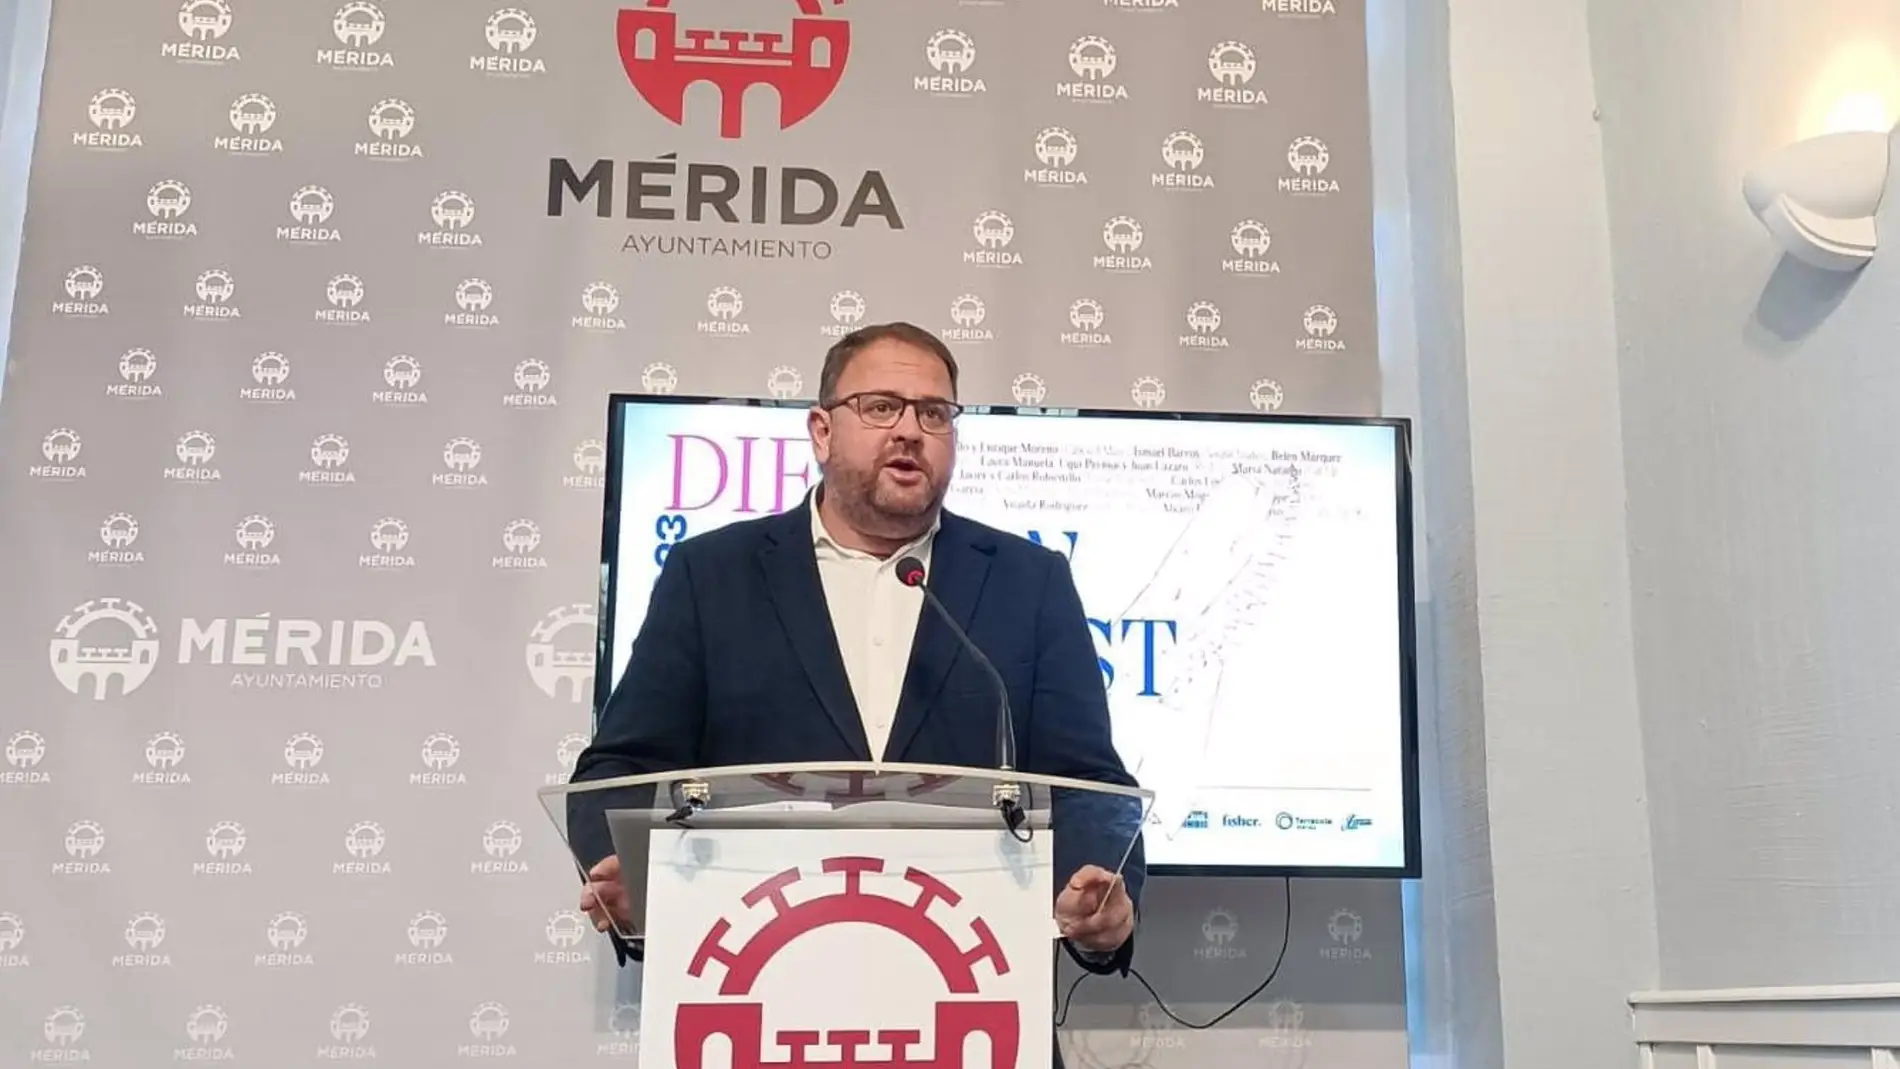 El alcalde de Mérida dice que no va a dimitir tras las grabaciones difundidas y que "está muy claro explicado" el asunto